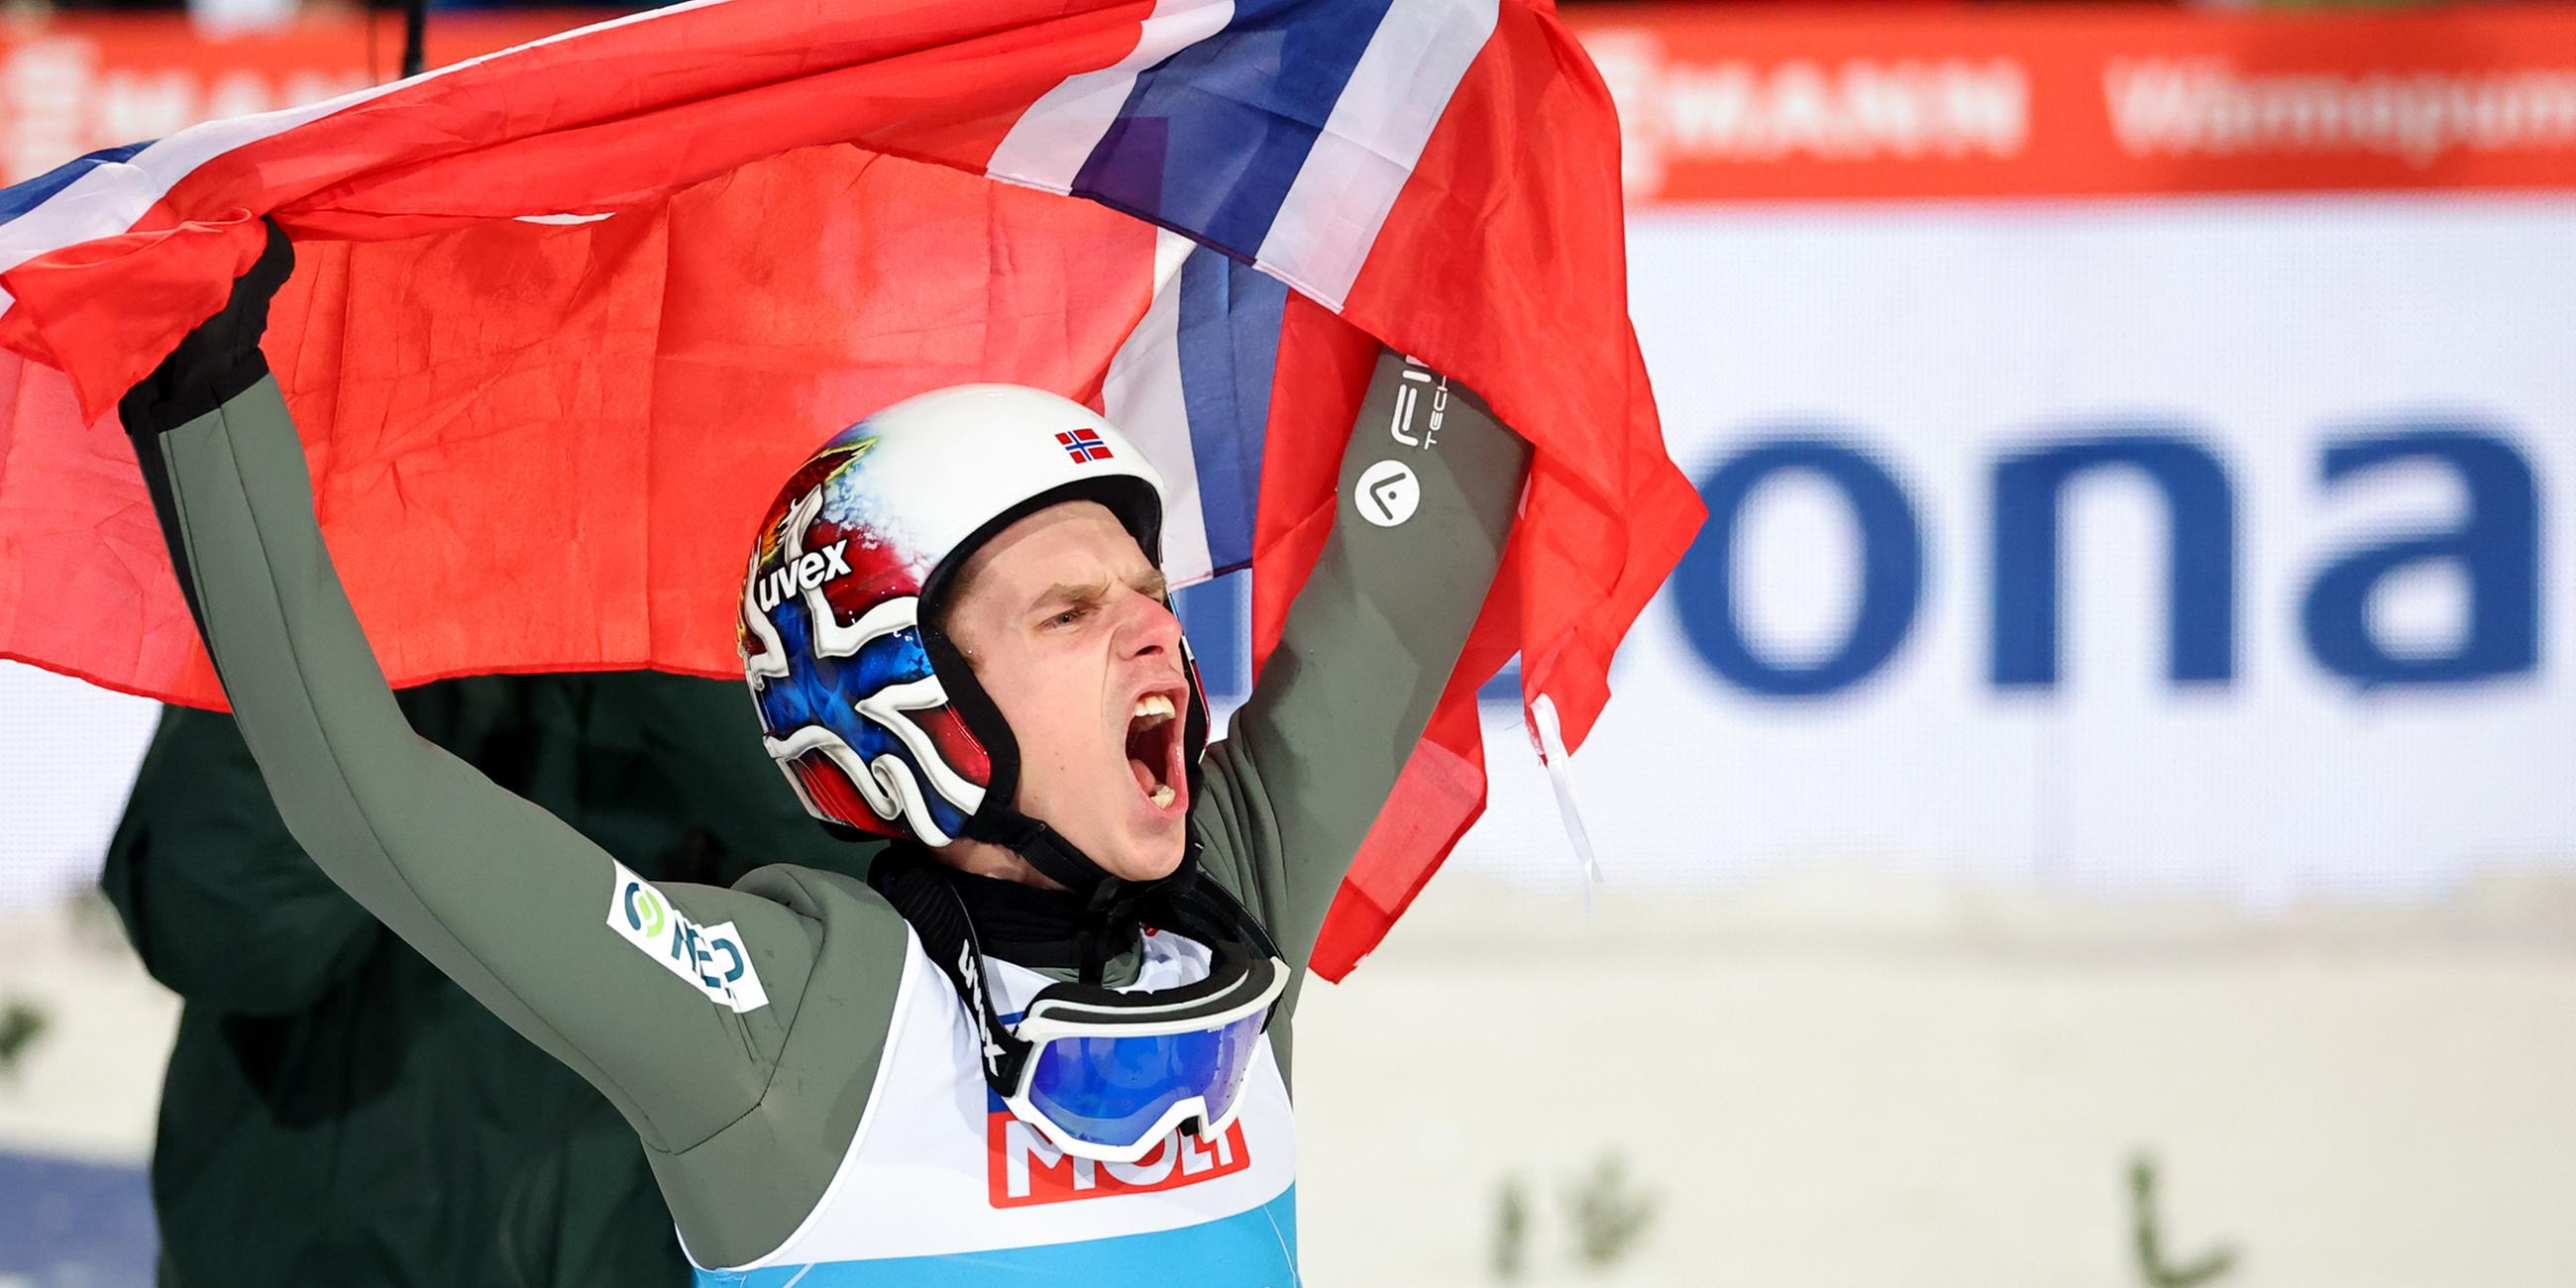 Halvor Egner Granerud (Norwegen) jubelt nach seinem Sprung über den Tages- und Gesamtsieg.